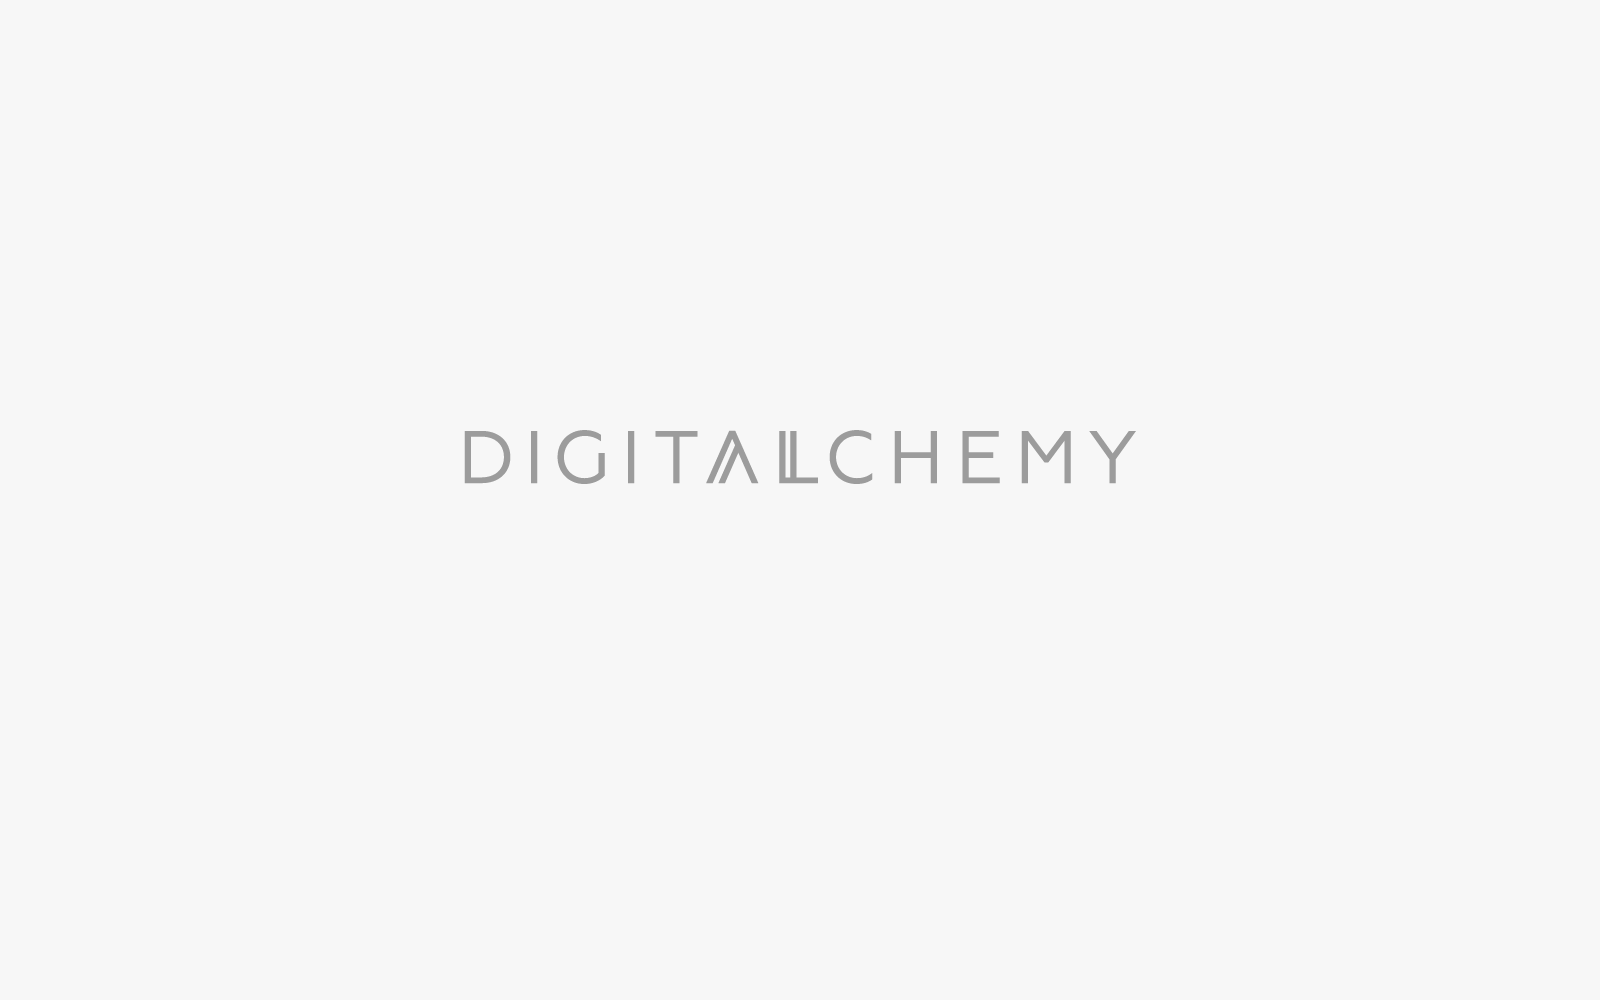 Digital Alchemy Portfolio Logotype